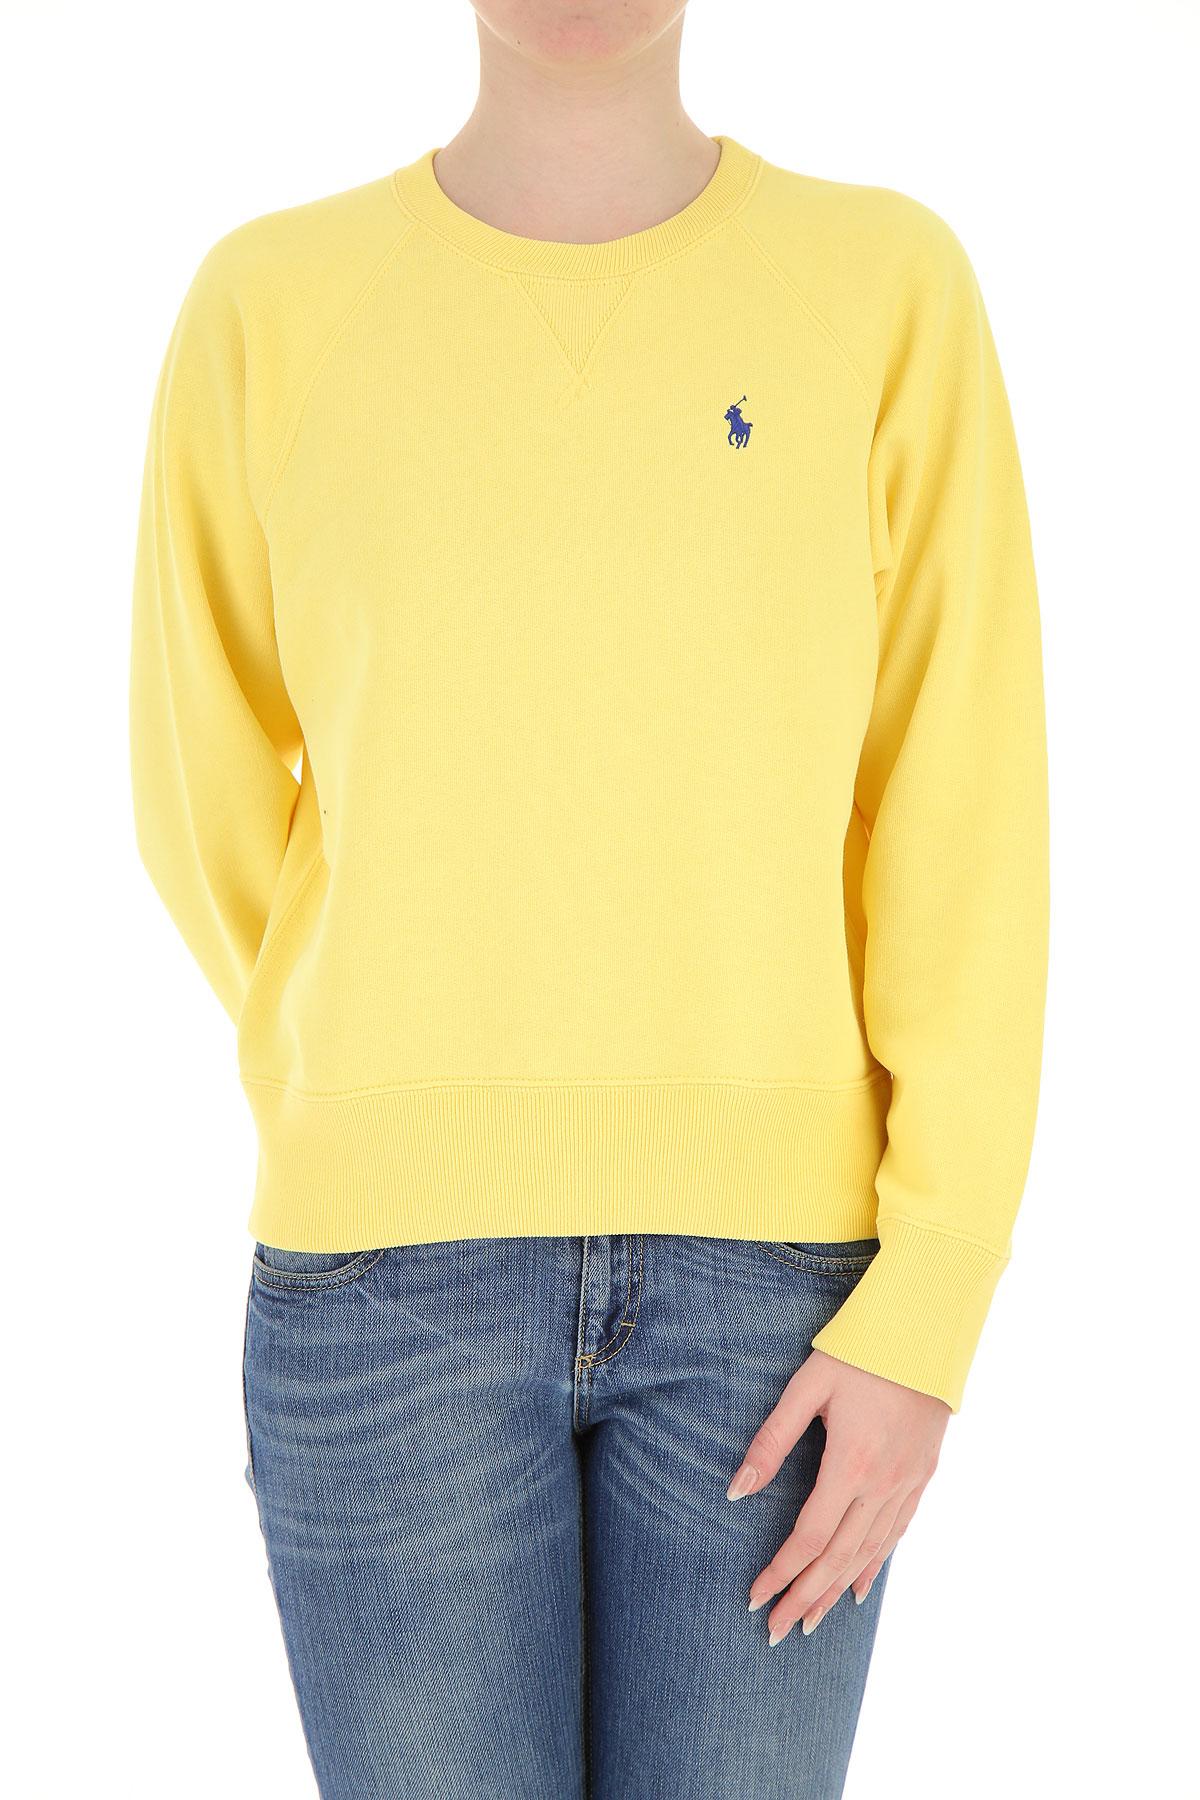 Ralph Lauren Cotton Sweatshirt For 